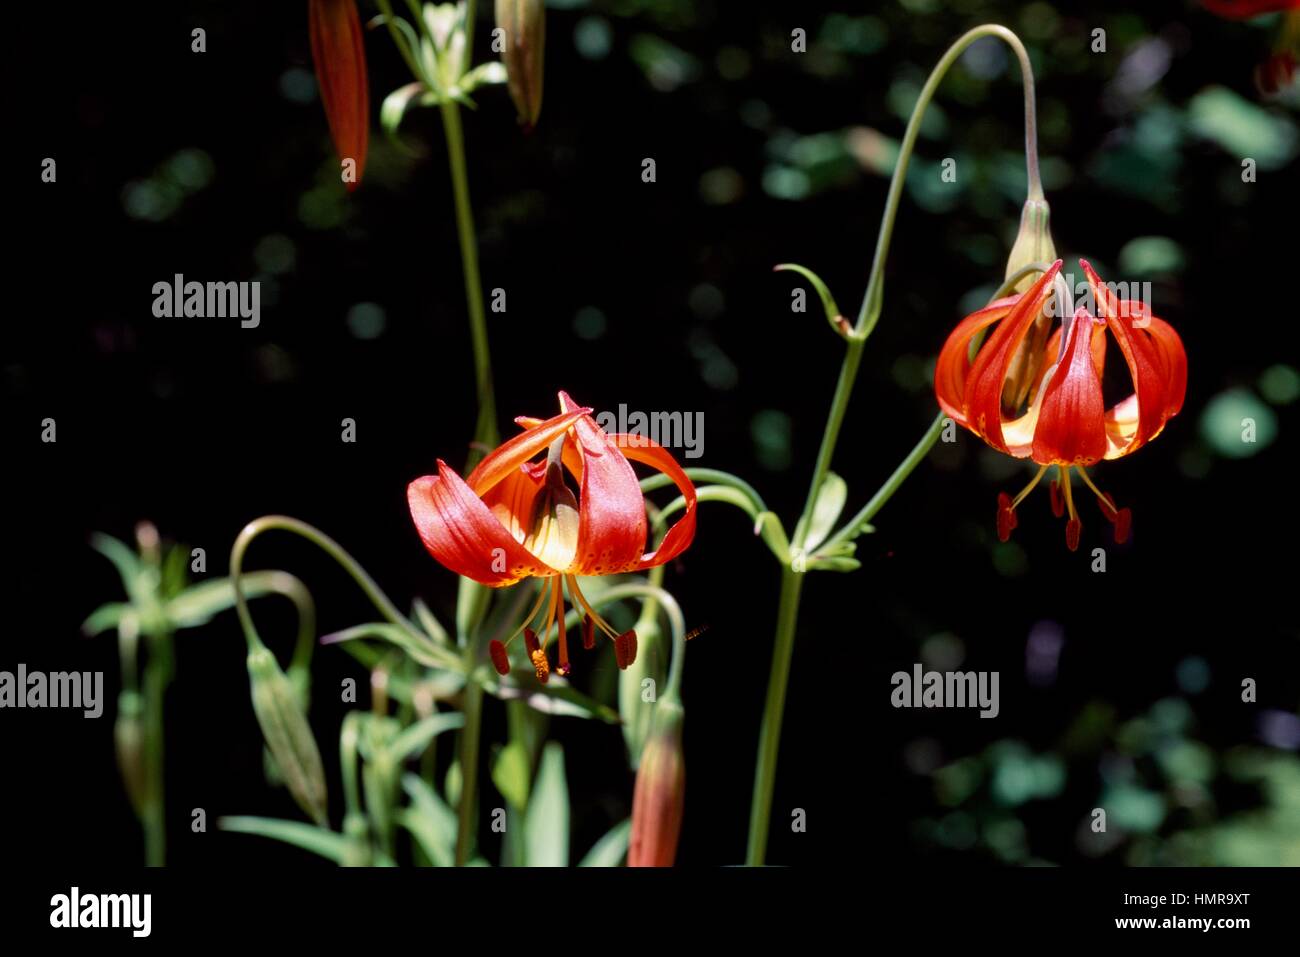 Pitkin Marsh Lily (Lilium pitkinense or Lilium pardalinum pitkinense), Liliaceae. Stock Photo